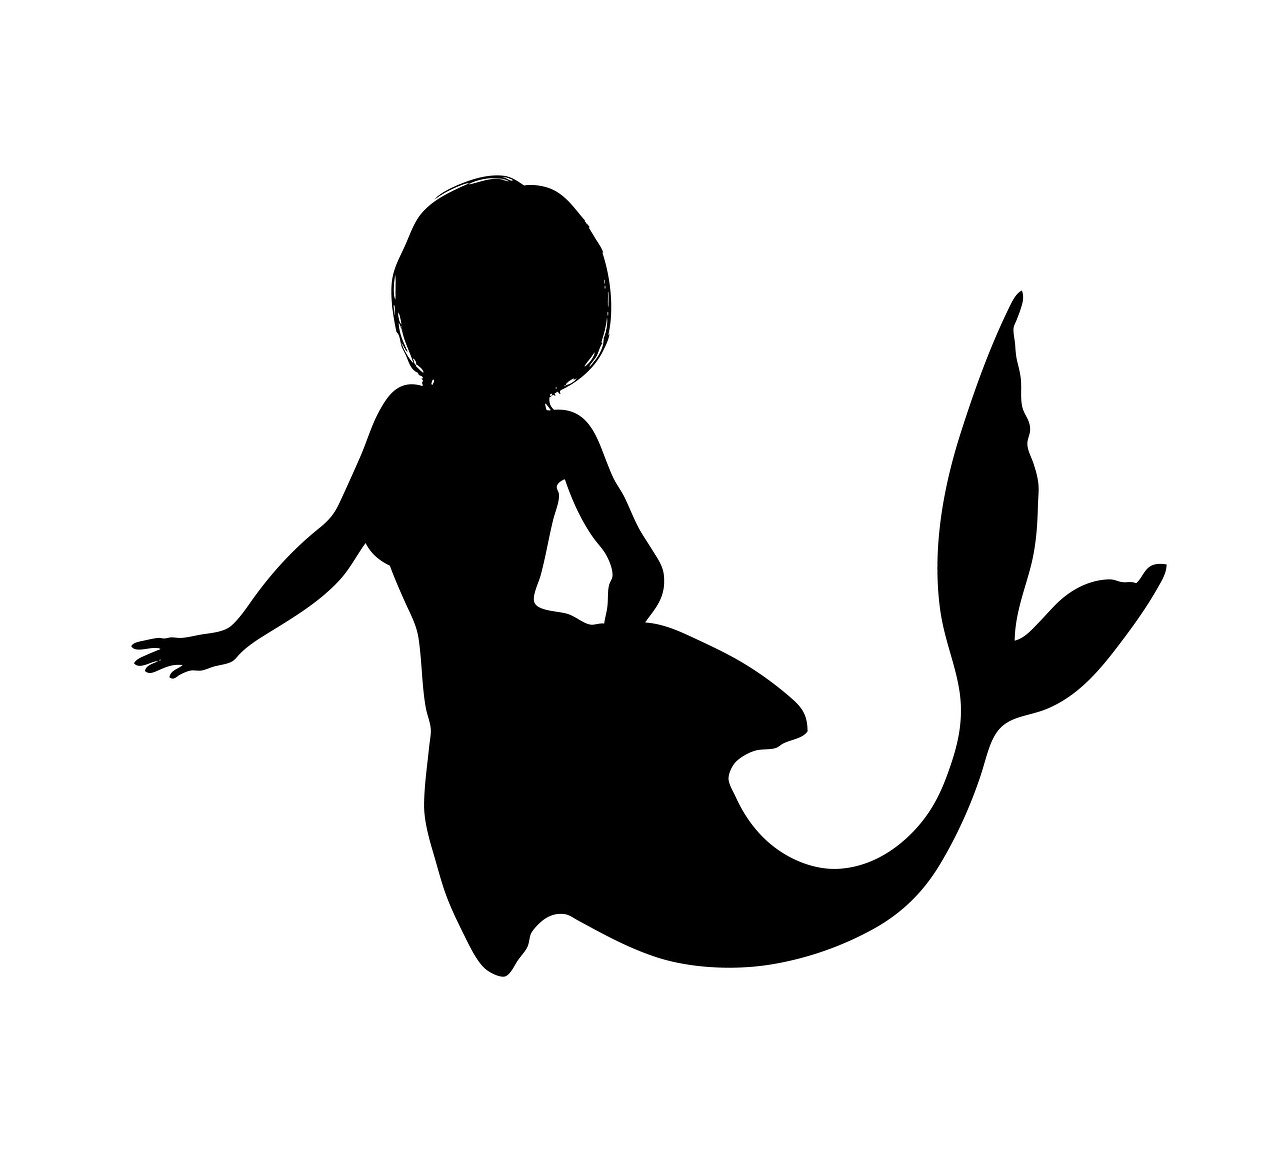 Mermaid svgs